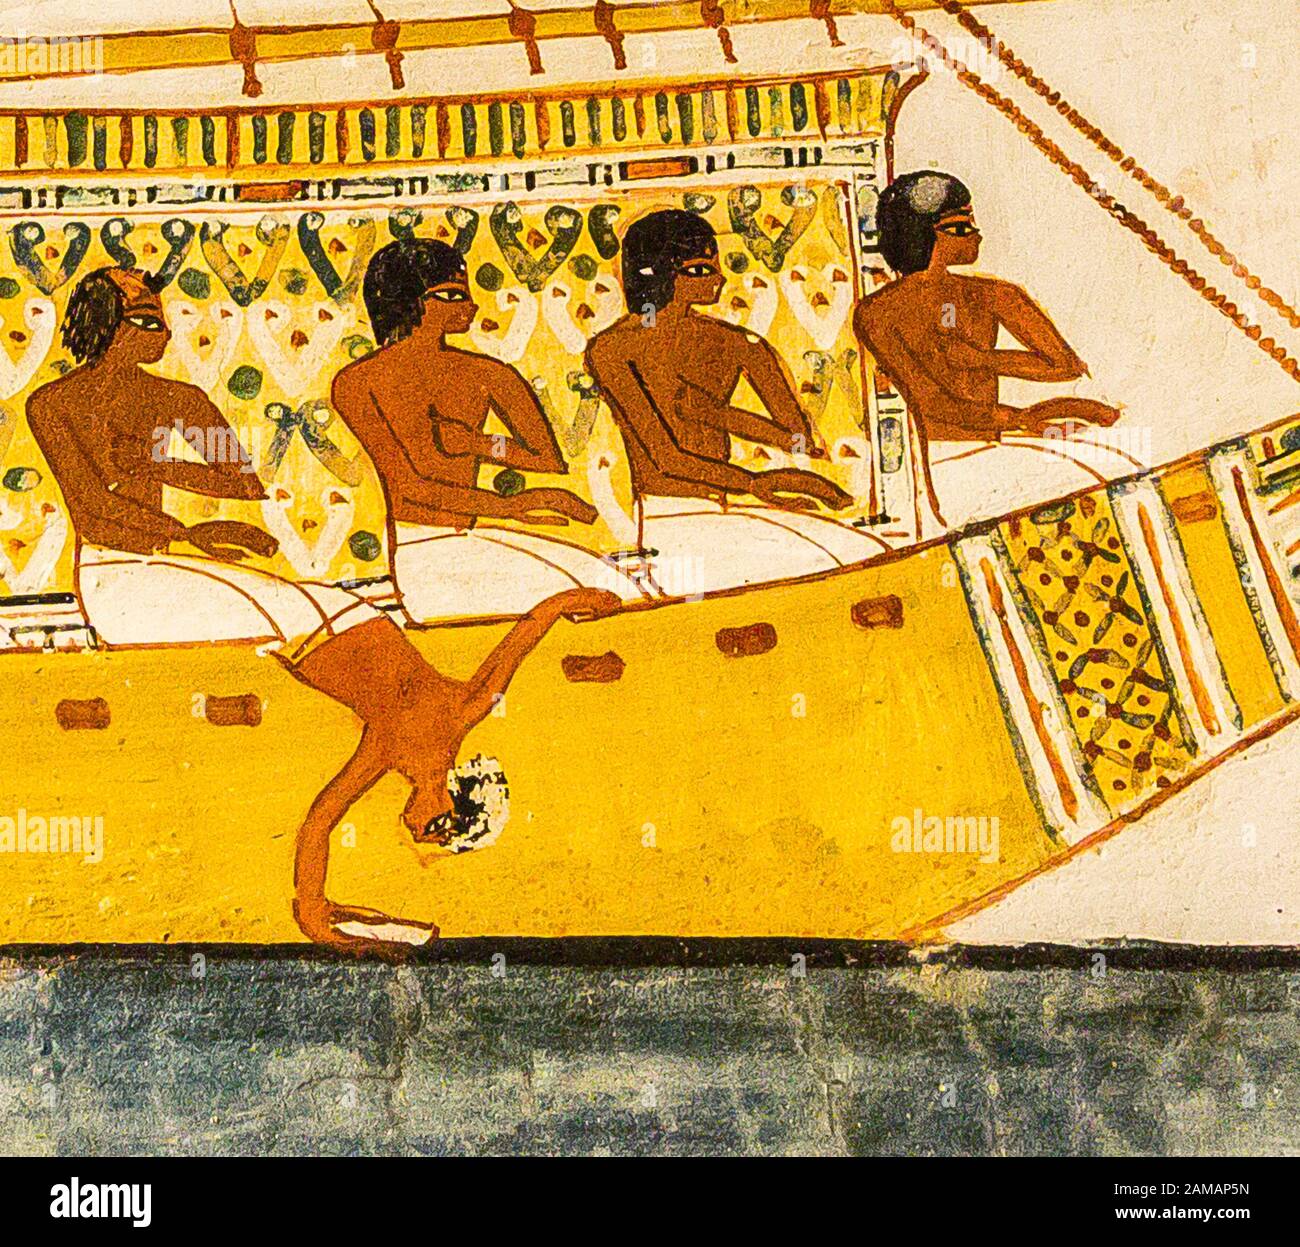 Patrimonio de la Humanidad de la UNESCO, Tebas en Egipto, Valle de los nobles, tumba de Menna. Abydos peregrinaje, un pequeño detalle divertido : un marinero se inclina acrobáticamente. Foto de stock